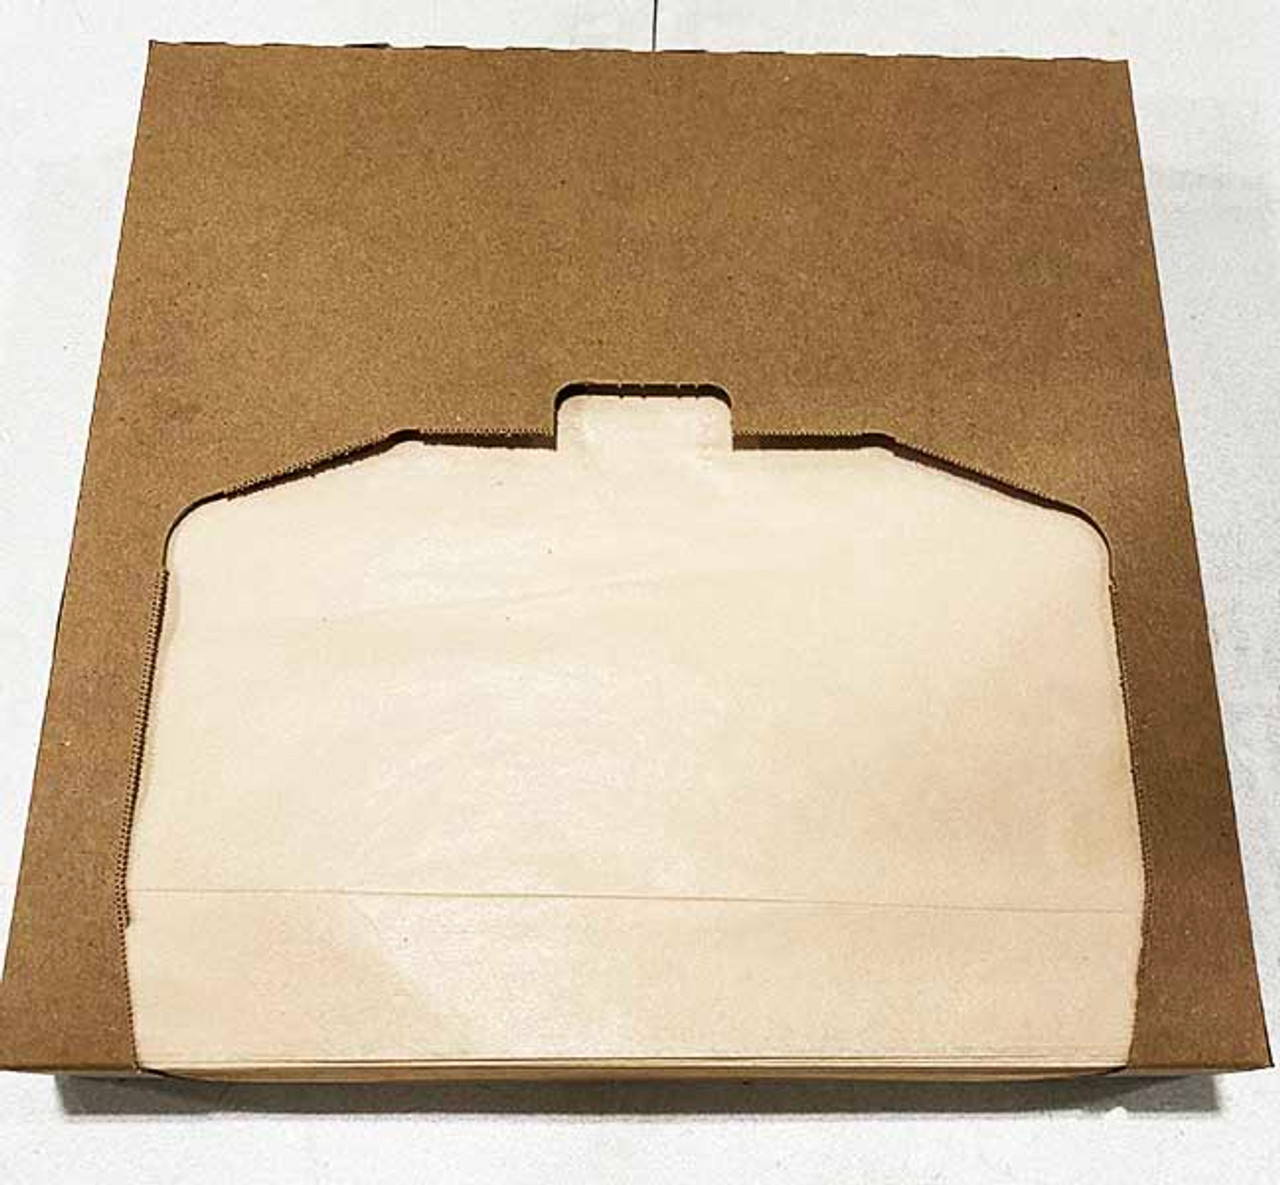 Karat 12 x 12 Deli Wrap / Paper Liner Sheets - Kraft - 5,000 ct